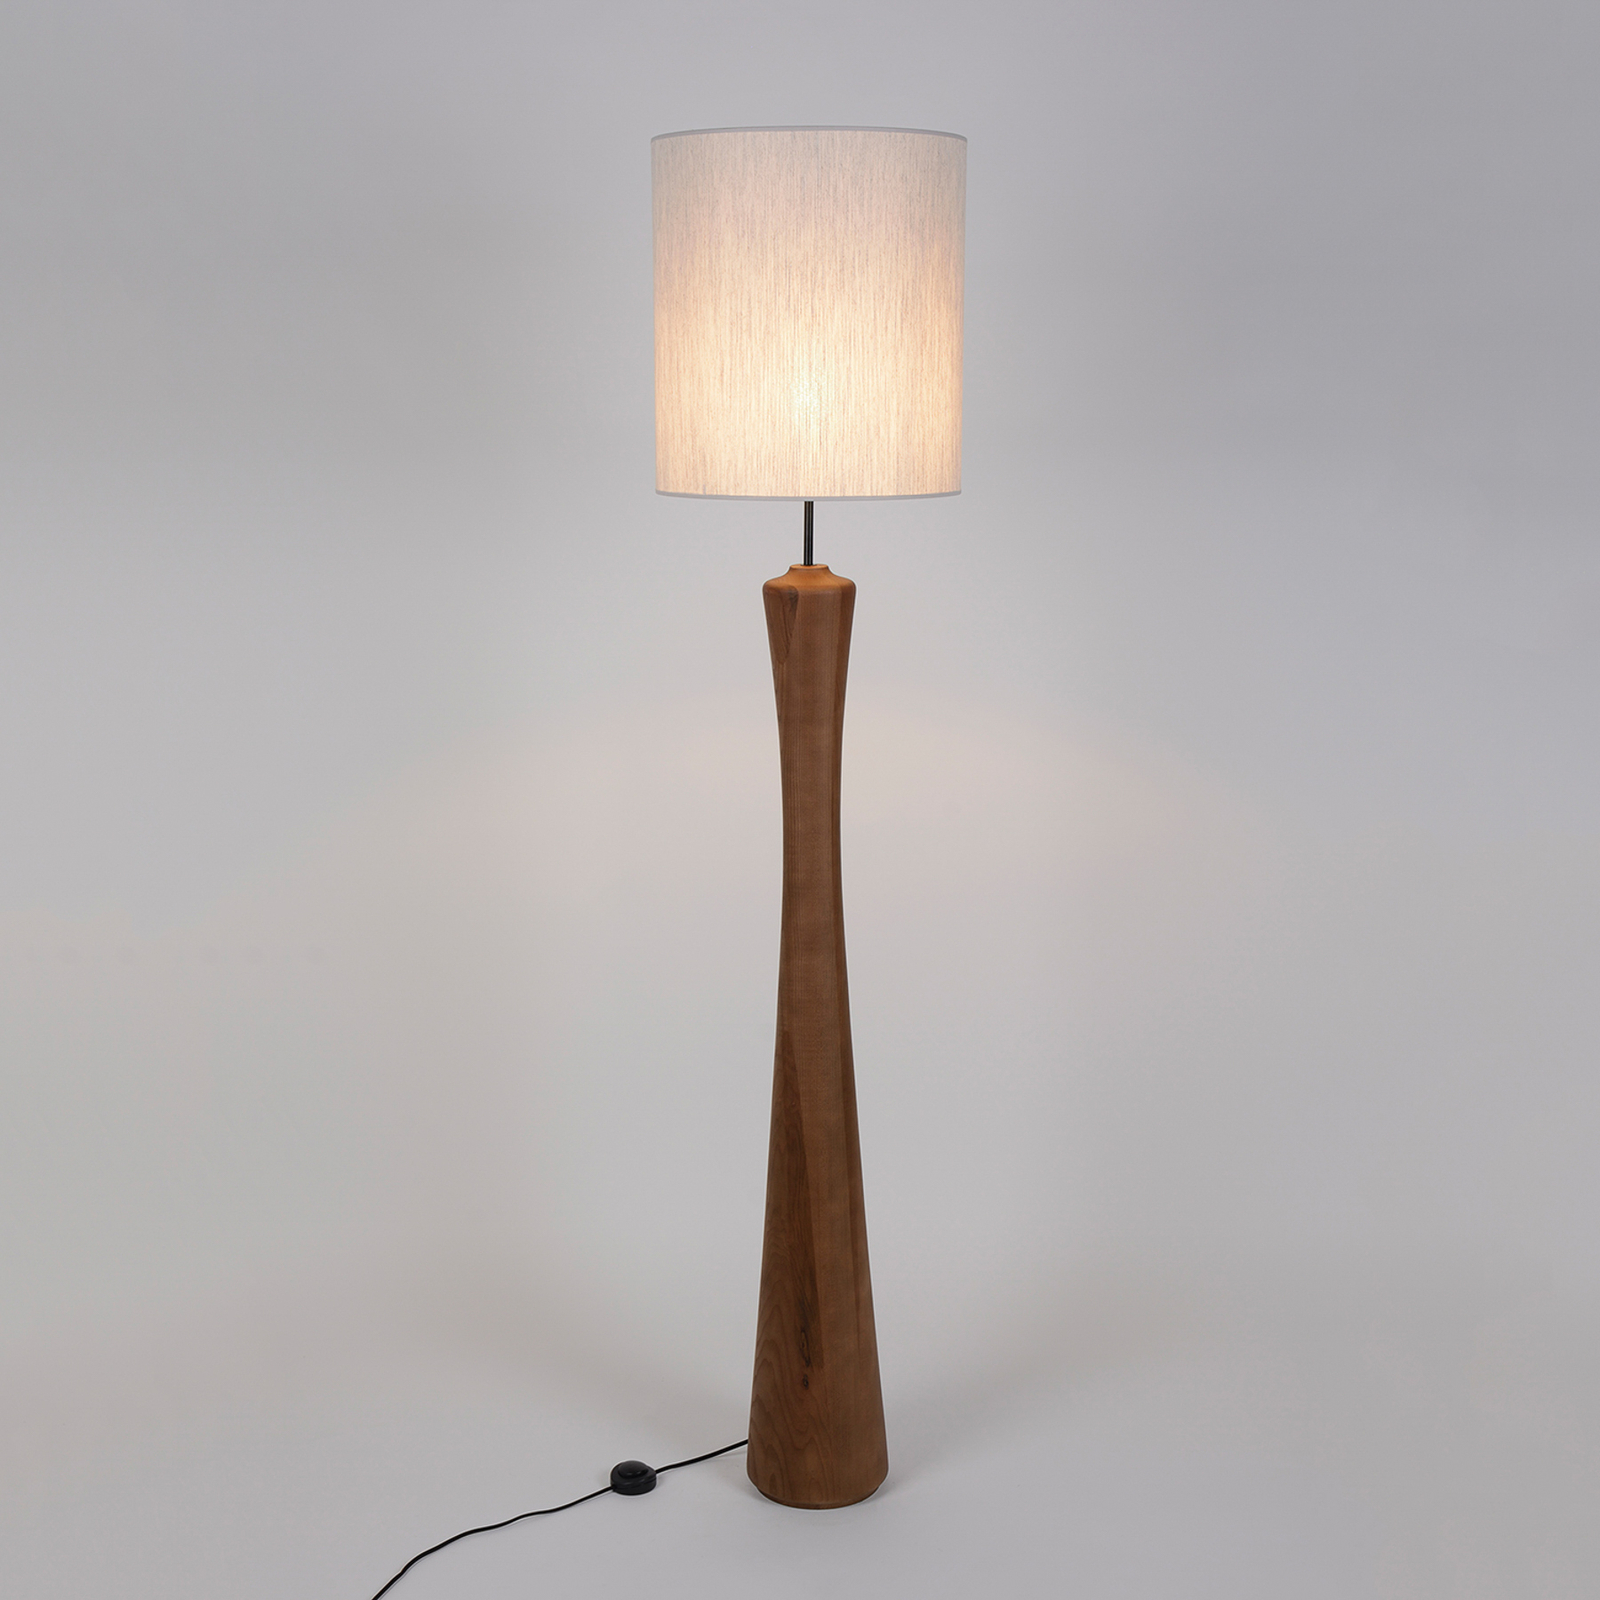 MARKET SET Bach floor lamp, height 184 cm, white